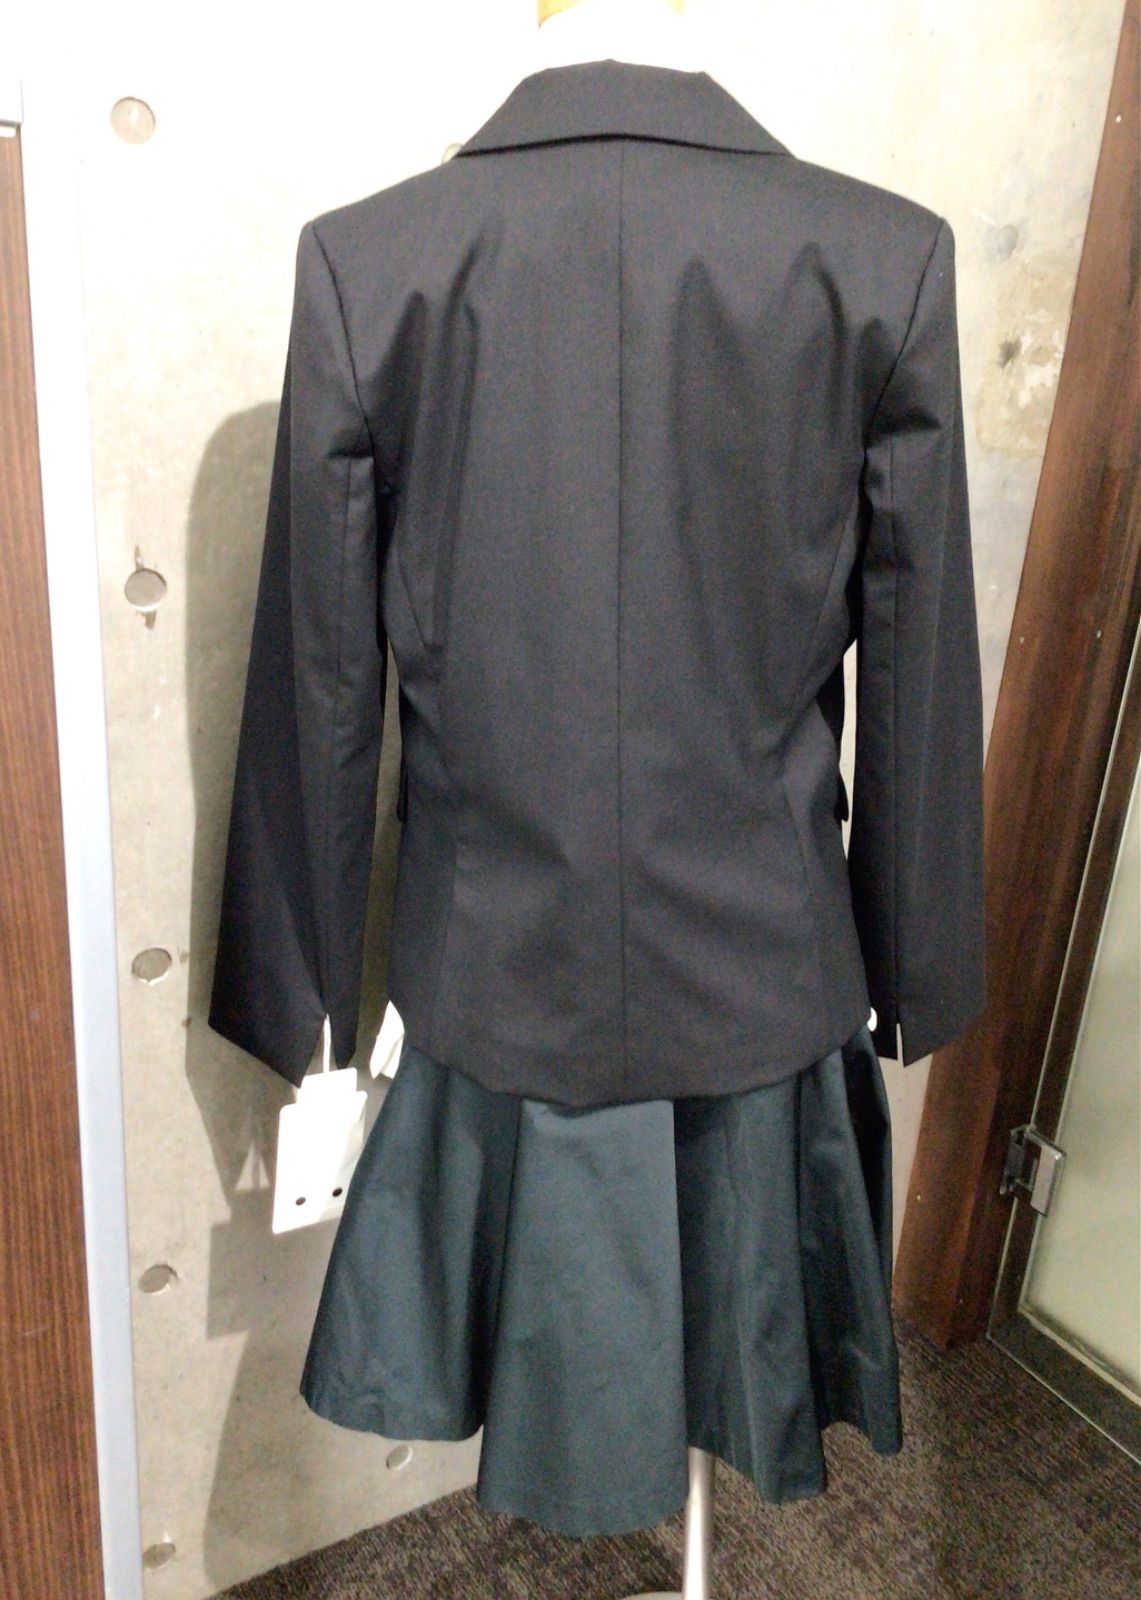 ✳︎SALE✳︎新品♡JUNO♡テーラードジャケット♡ブラック♡サイズ38着丈60cm